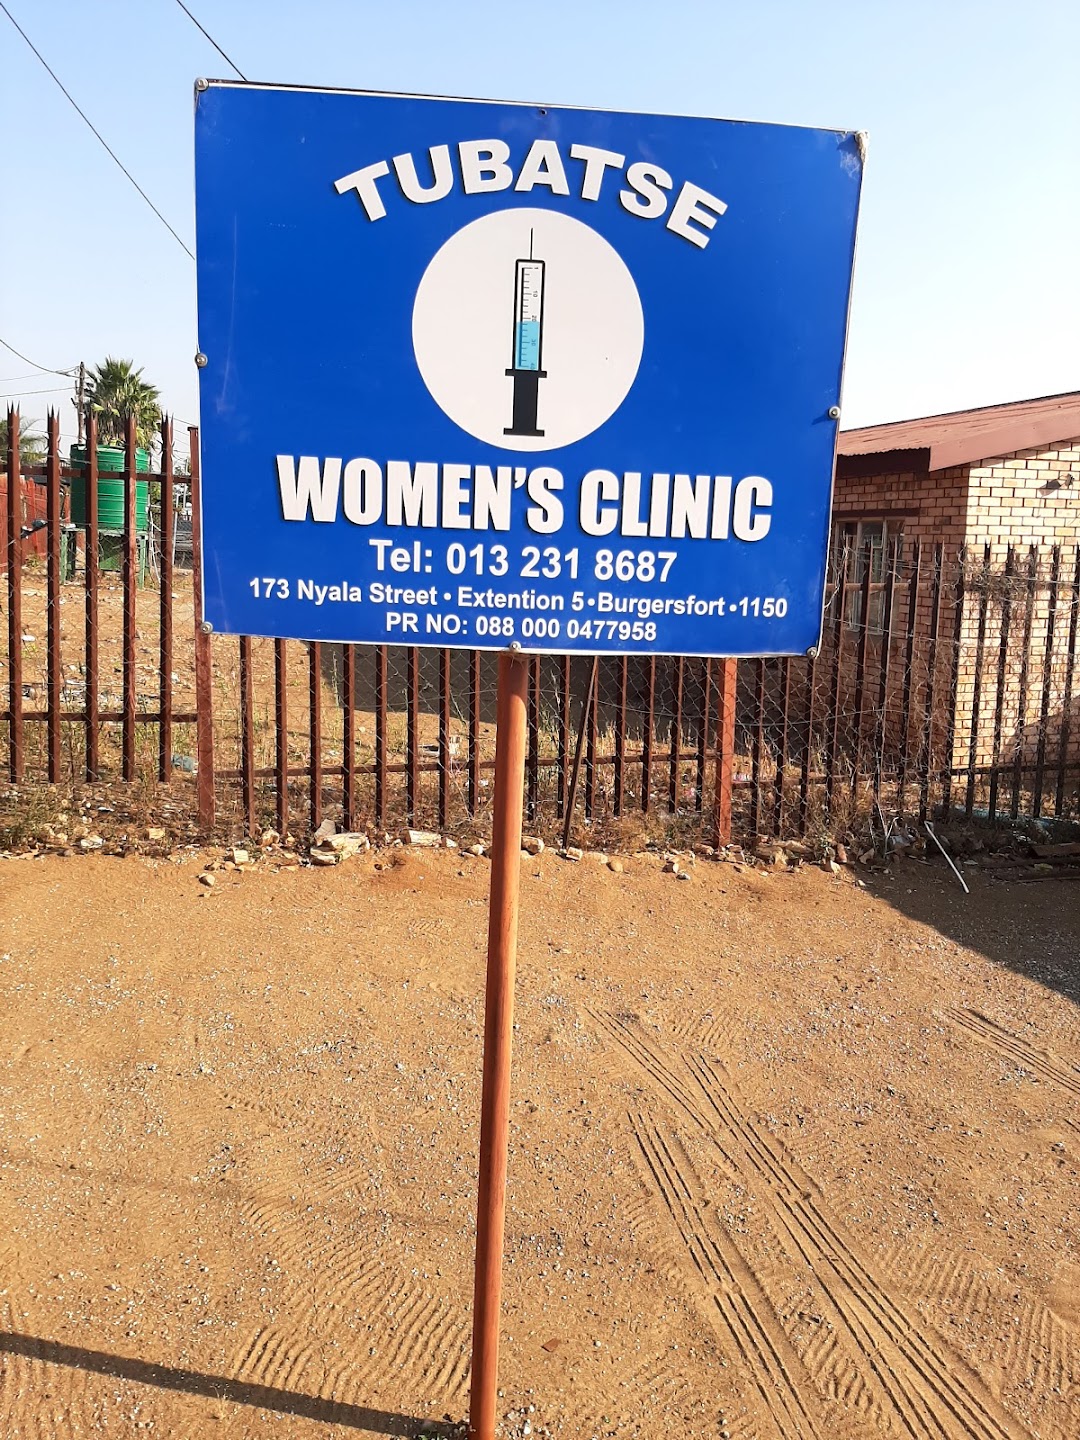 Tubatse Womens Clinic